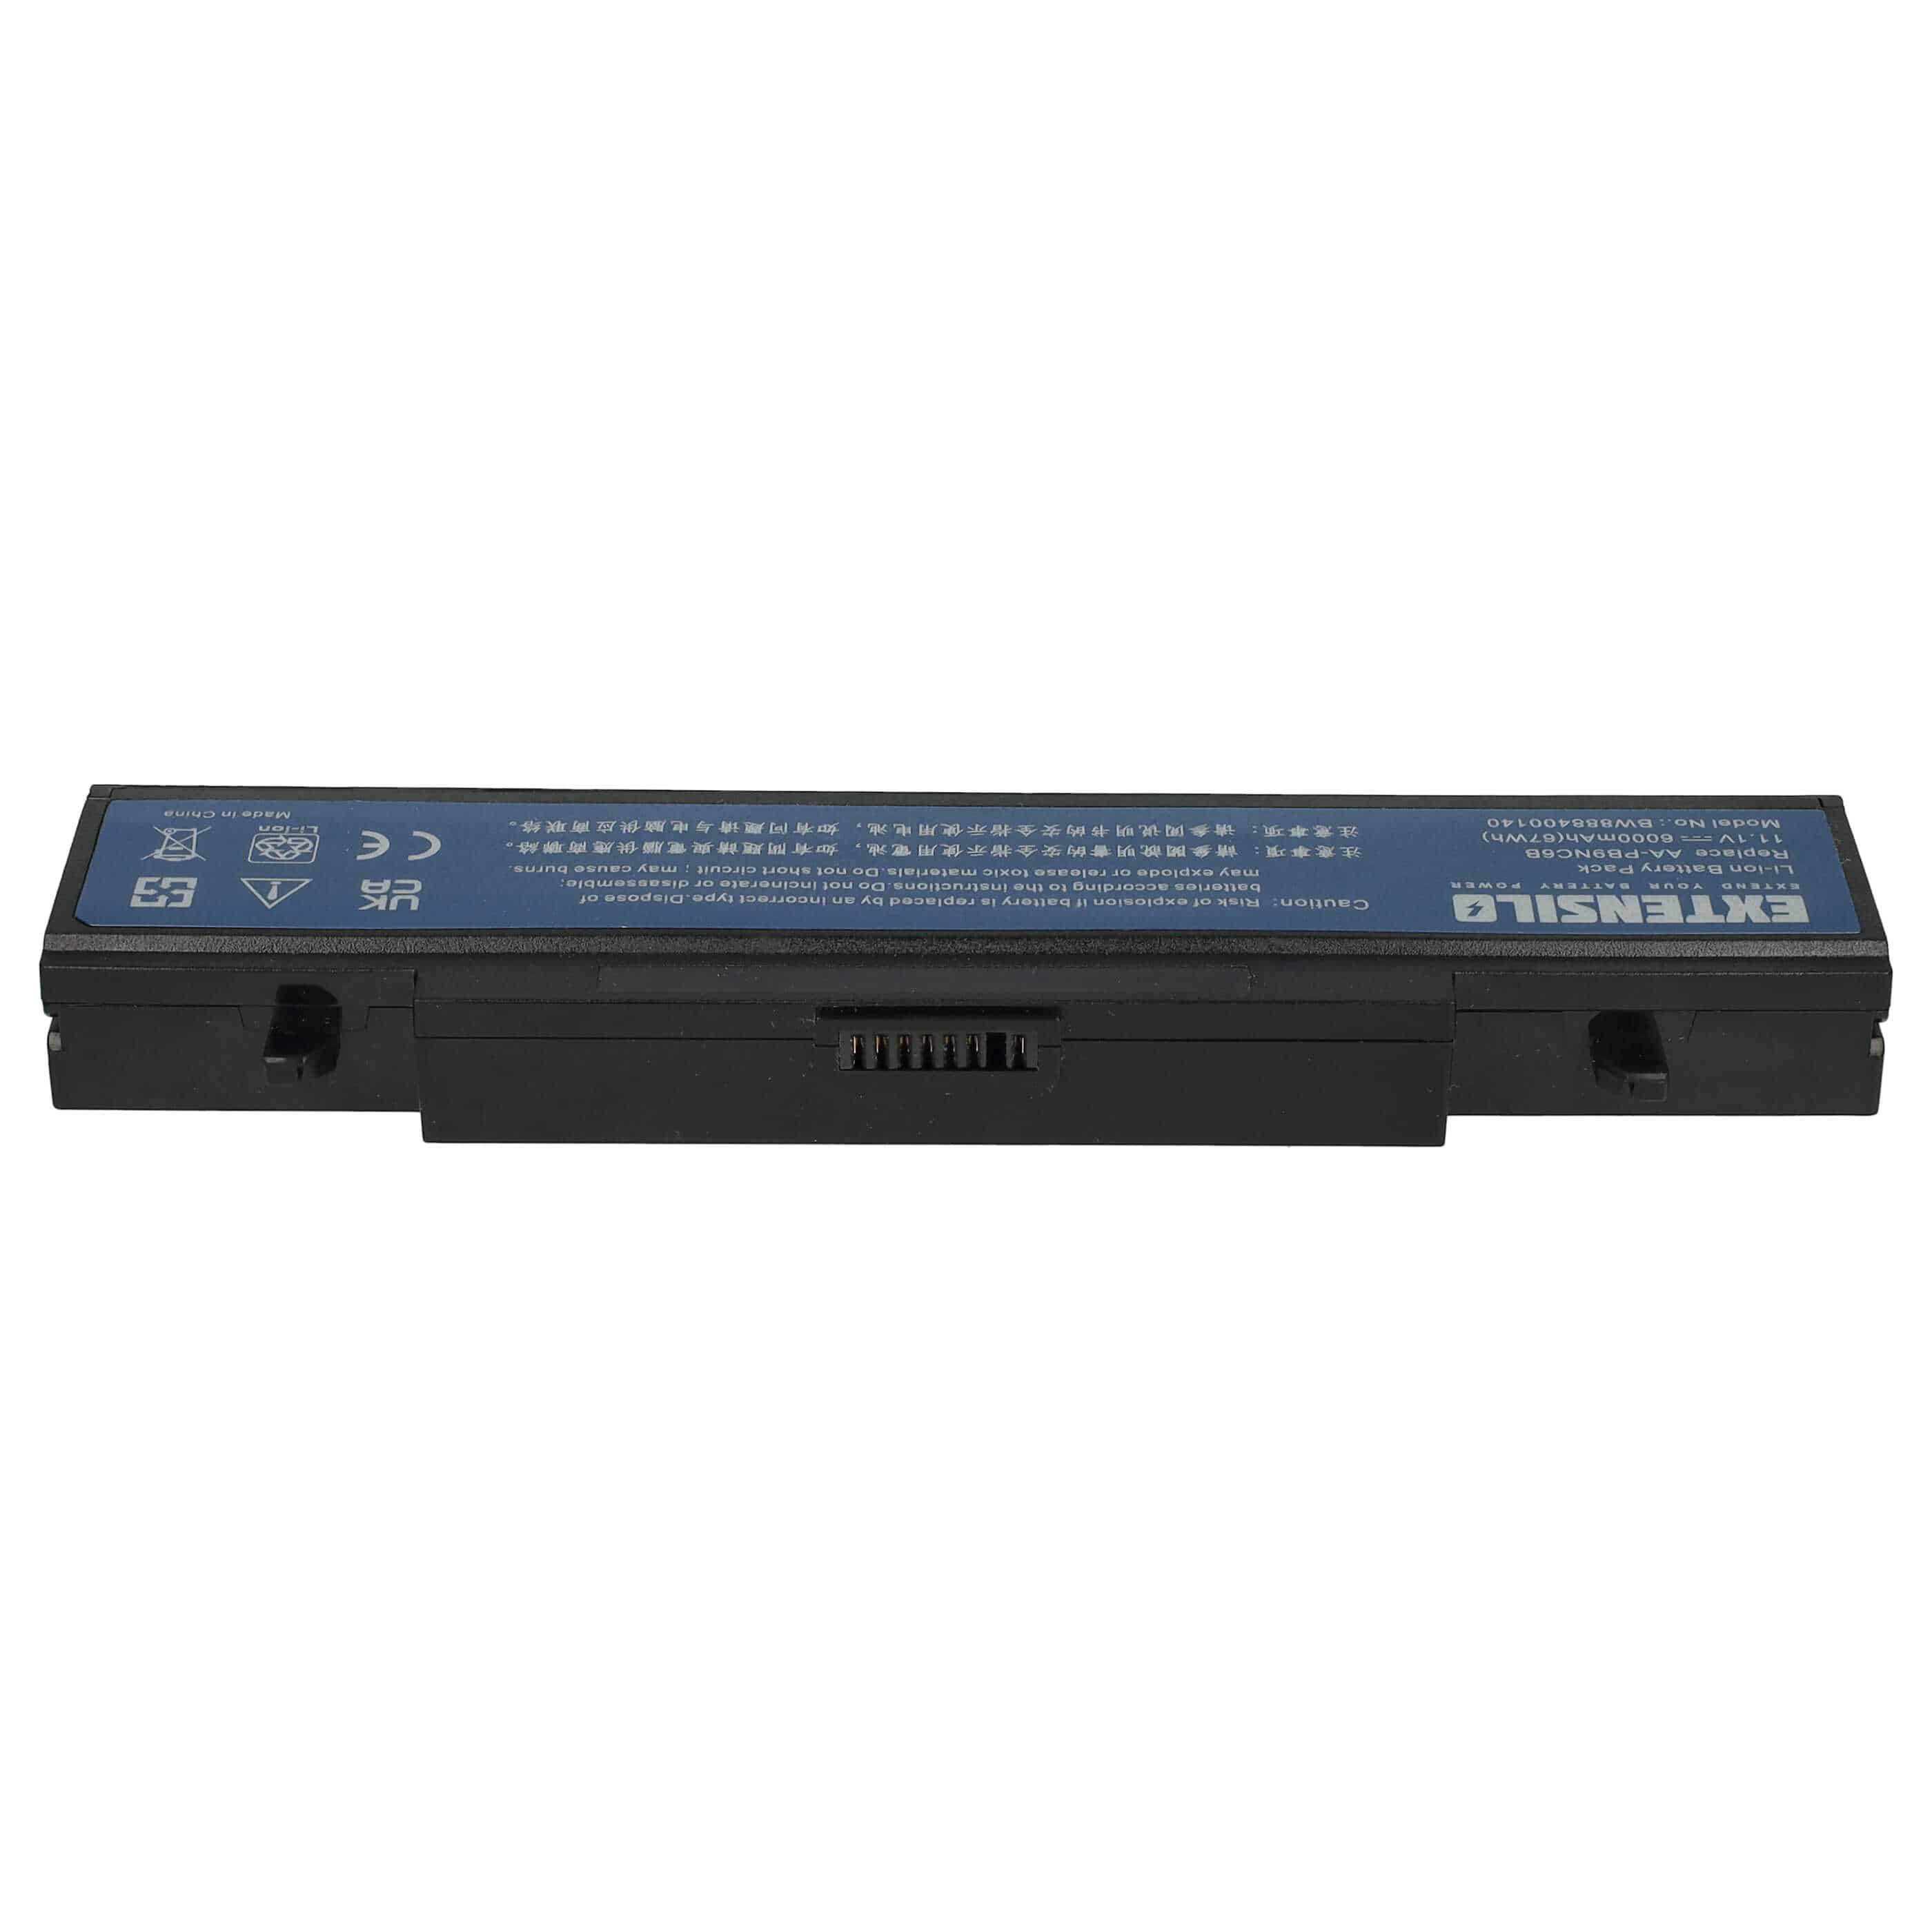 Batteria sostituisce Samsung AA-PB9MC6B, AA-PB9MC6W, AA-PB9MC6S per notebook Samsung - 6000mAh 11,1V Li-Ion